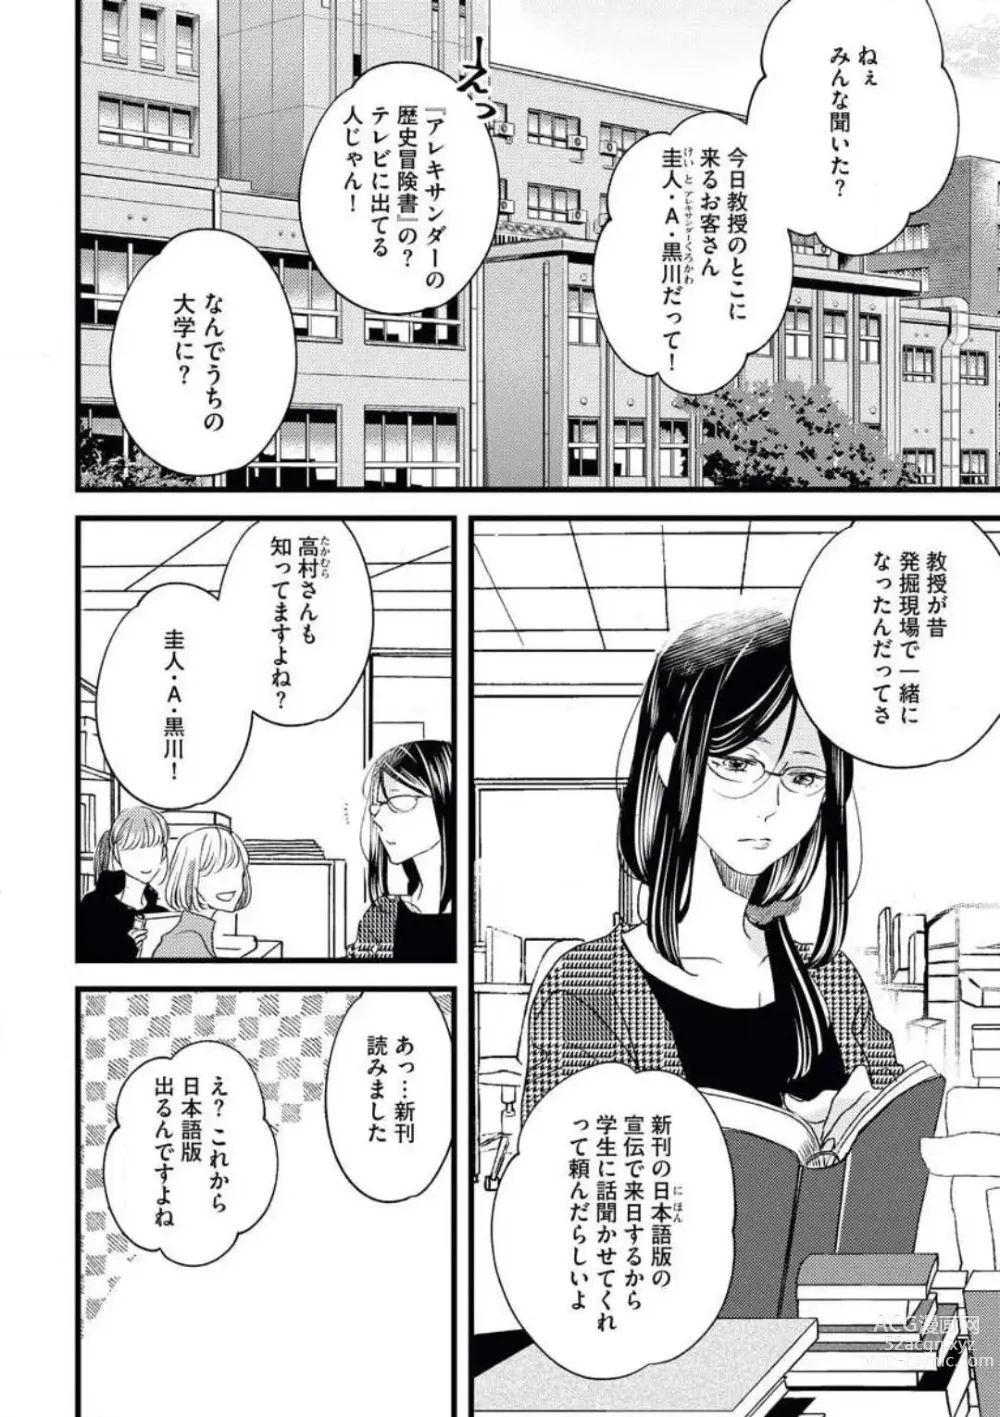 Page 2 of manga Otona ni Natta Bokura de Hatsukoi no Hanashi o Shiyou ka